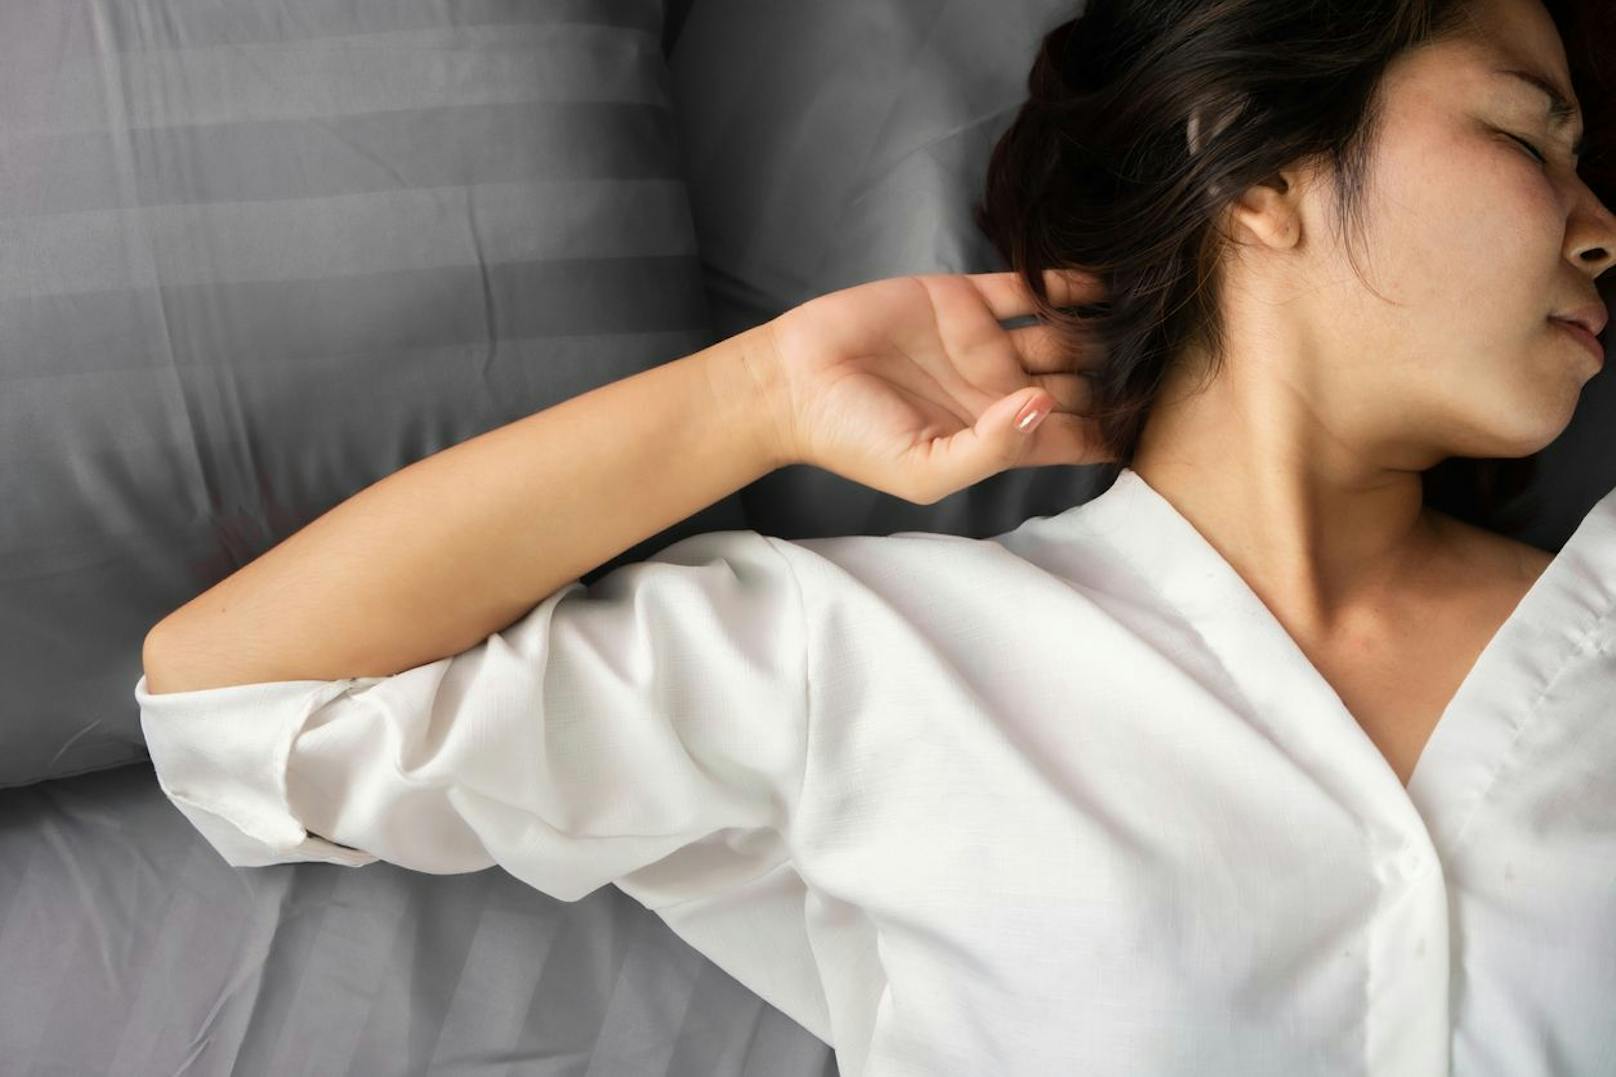 Im Schlaf brauchst du ein wenig Bewegung. Schläfst du nur in einer Position kann sich deine Rückenmuskulatur jeden Abend um ein Stück zurückbilden.